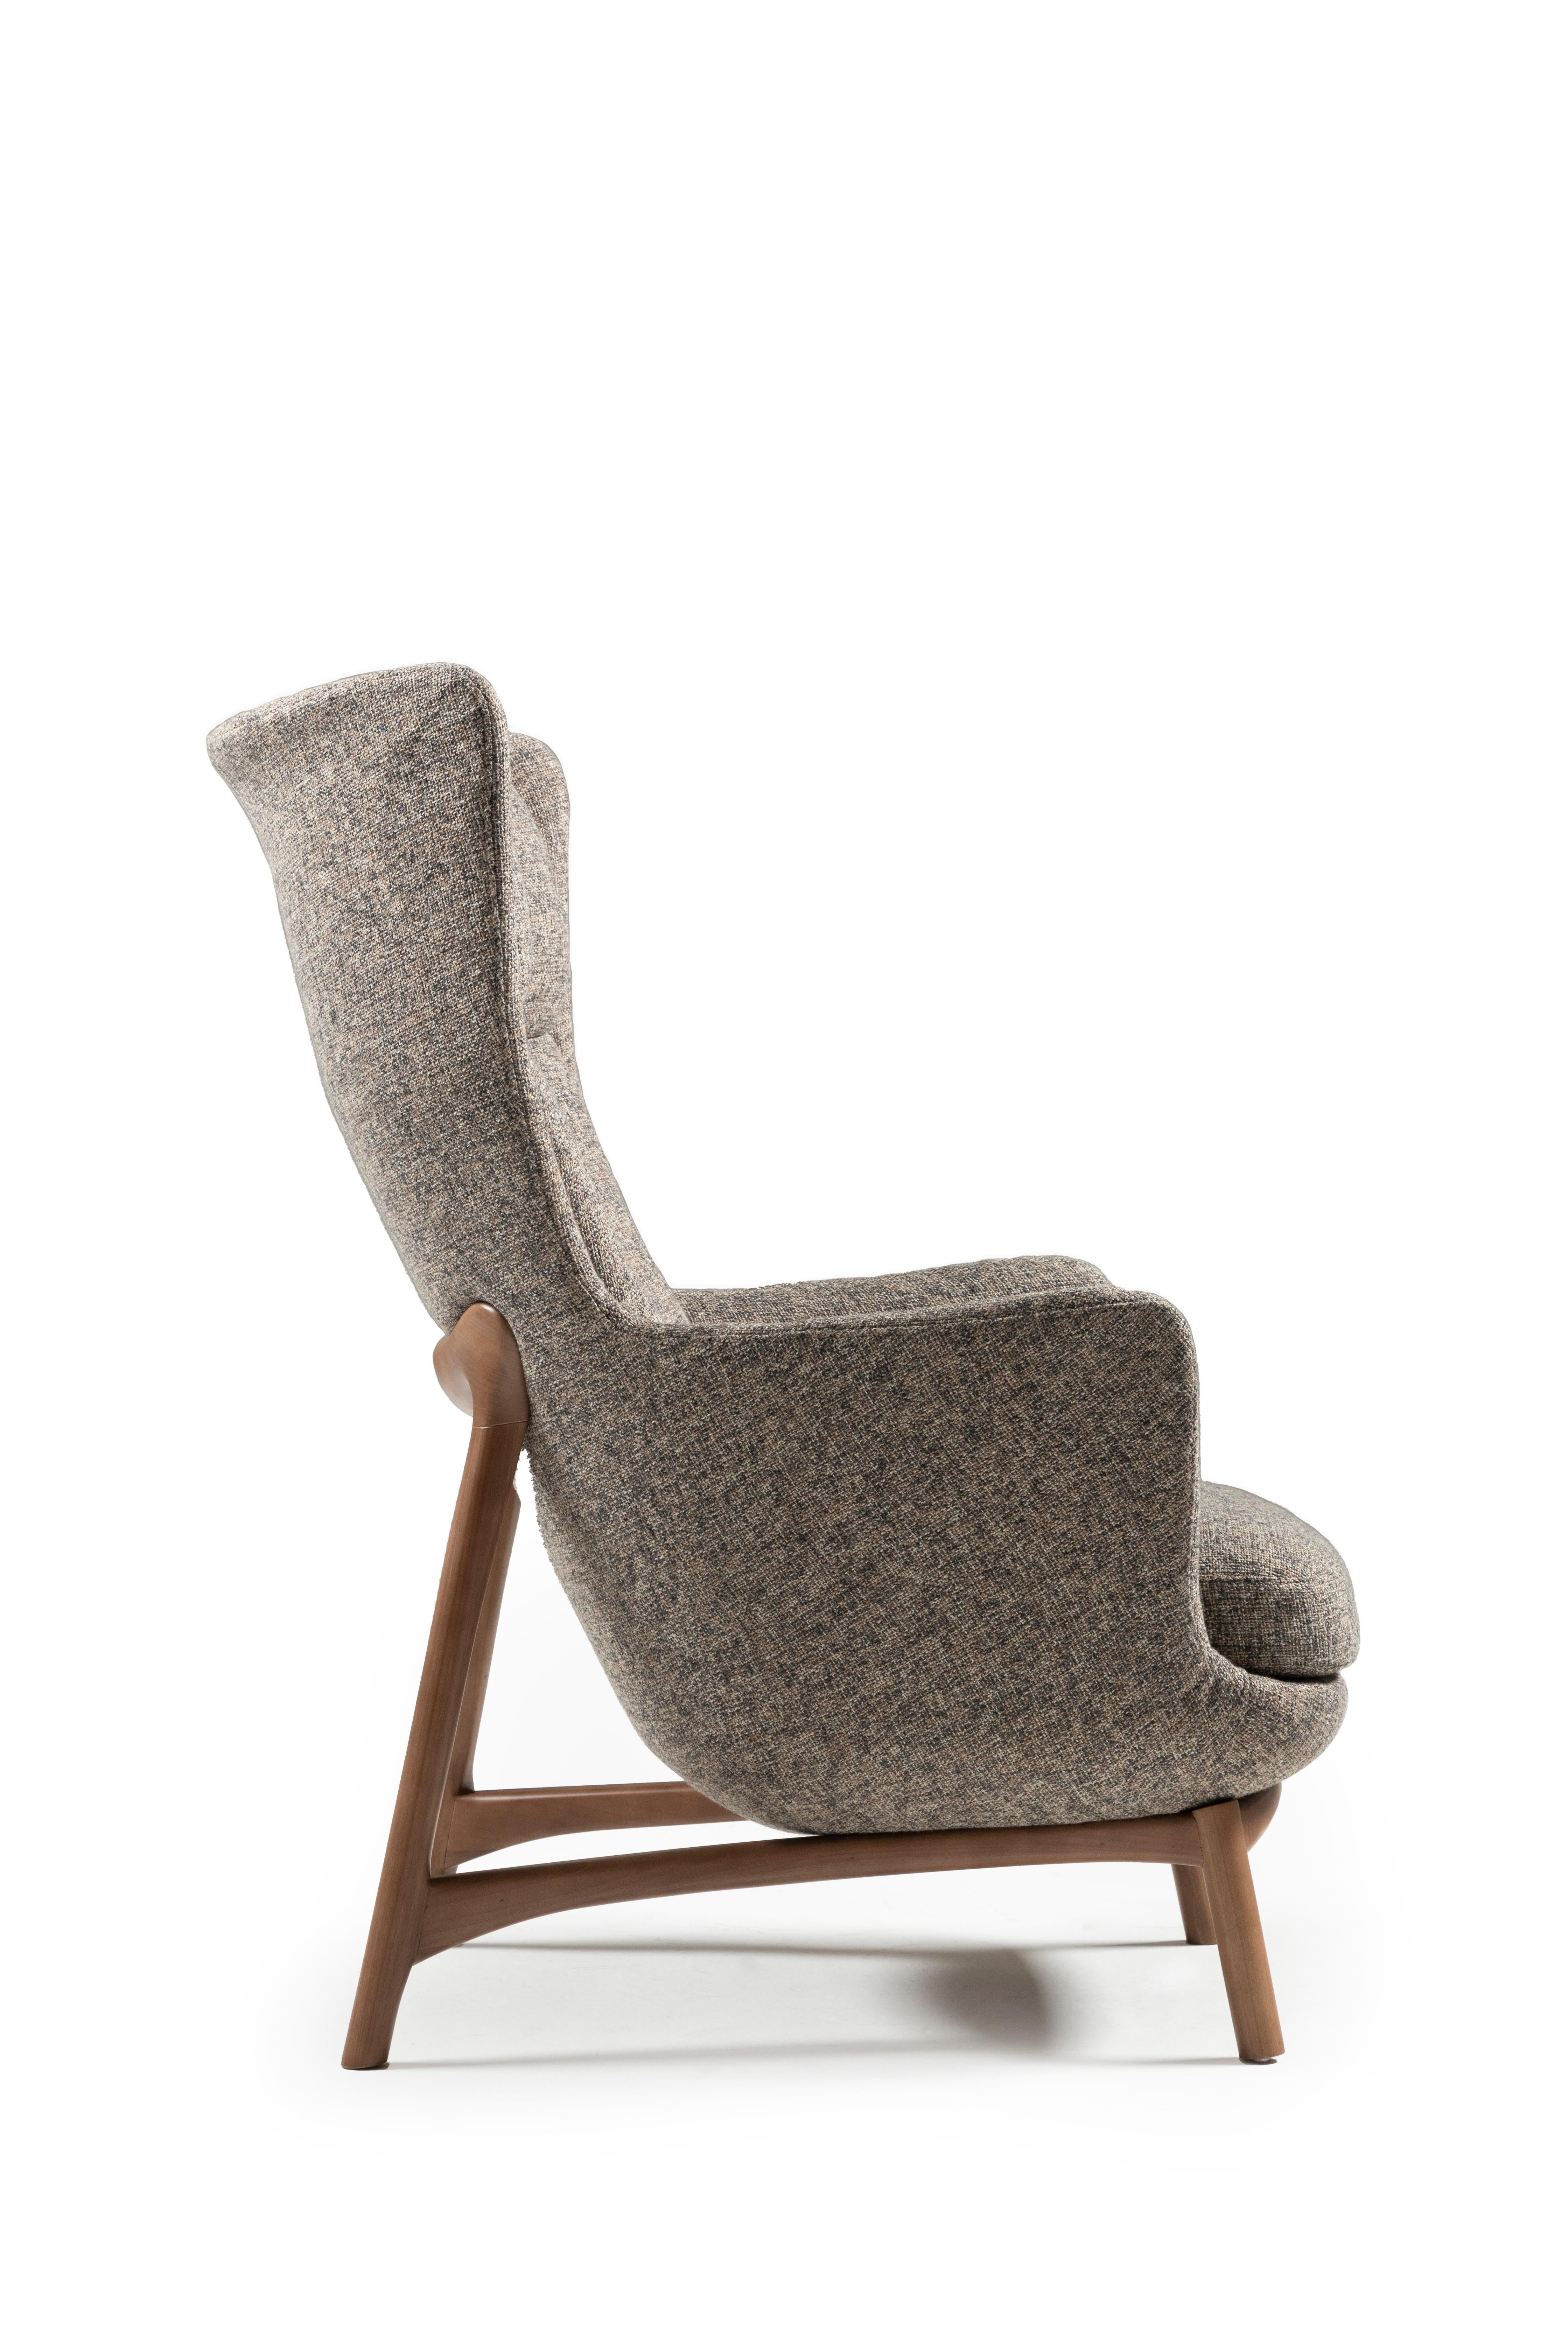 Moderne Sublime fauteuils hauts, style contemporain en bois massif, tissu d'ameublement textile.  en vente